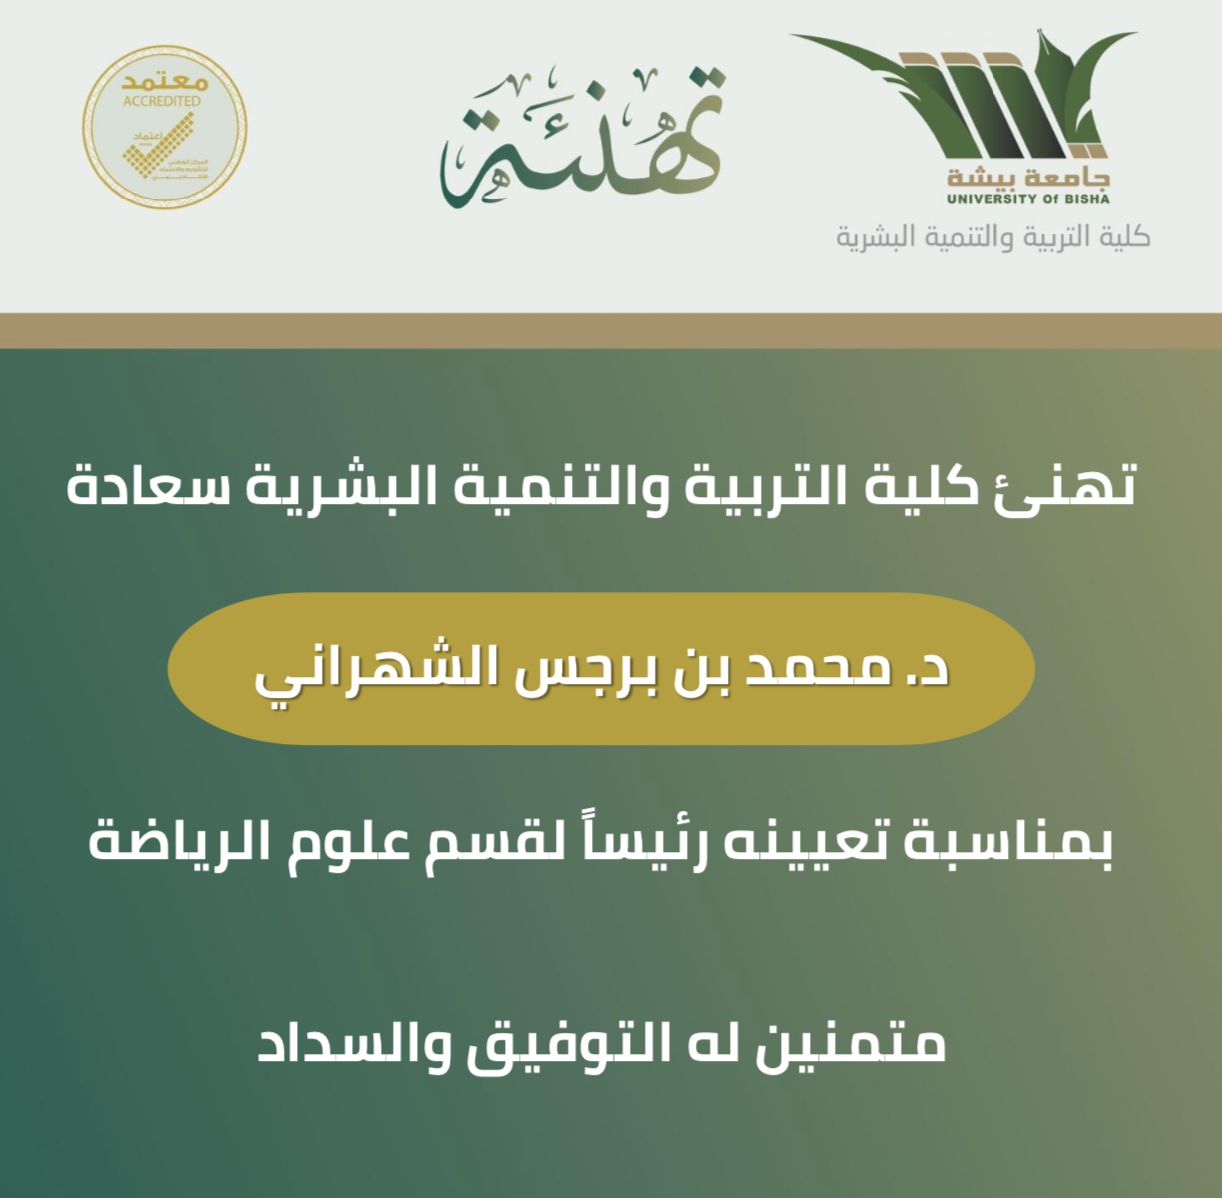 تهنئة د. محمد بن برجس الشهراني رئيسًا  لقسم علوم الرياضة